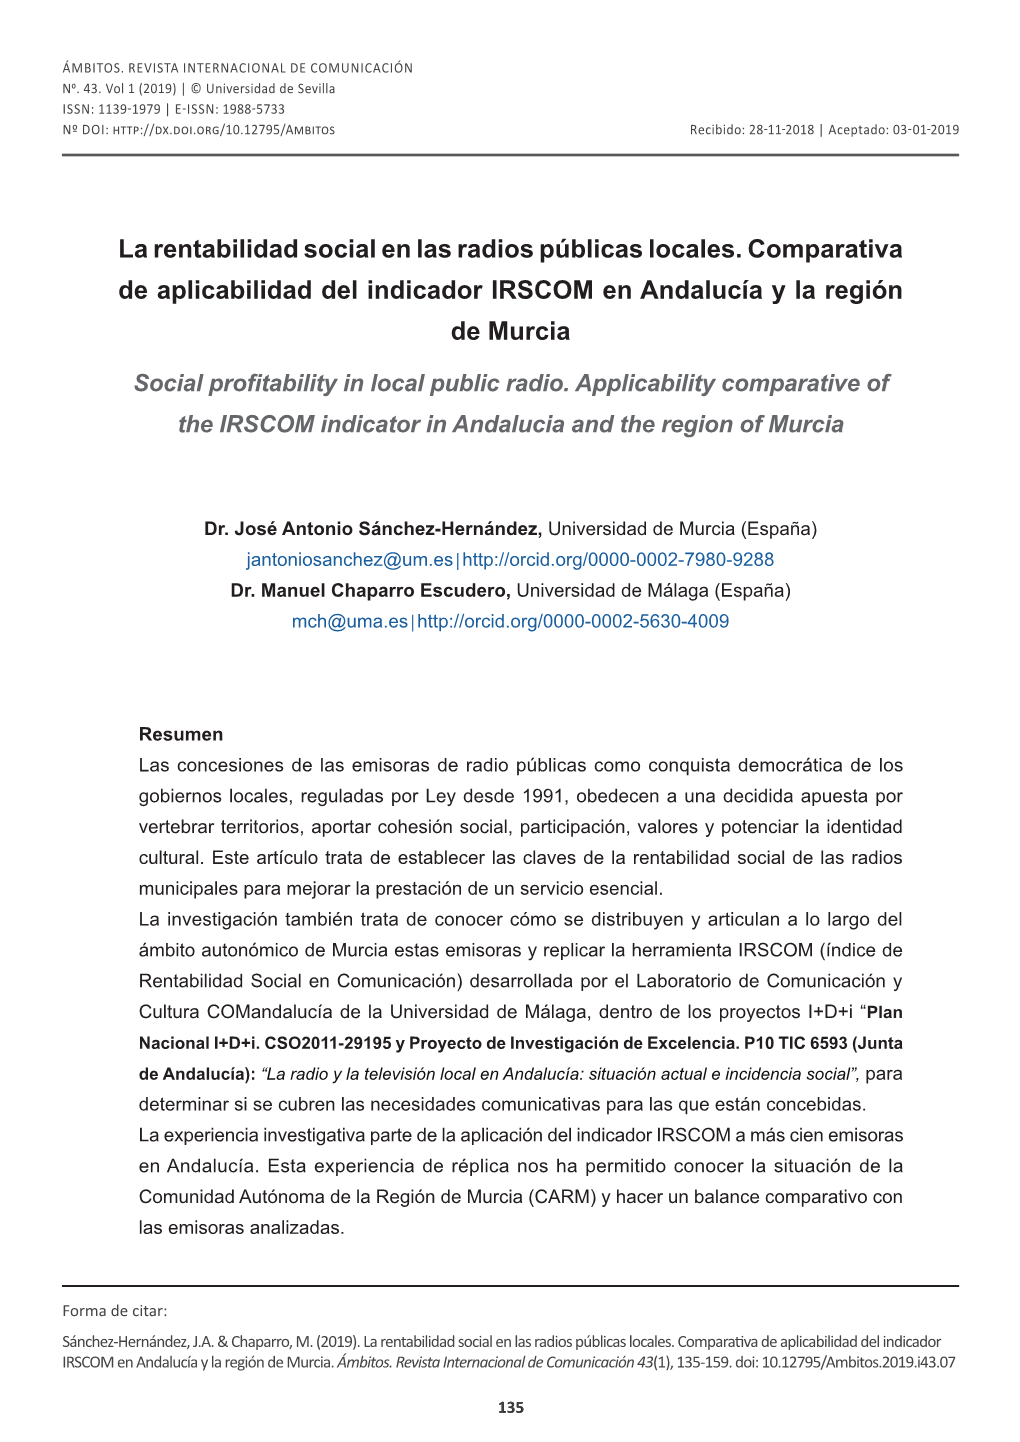 La Rentabilidad Social En Las Radios Públicas Locales. Comparativa De Aplicabilidad Del Indicador IRSCOM En Andalucía Y La Región De Murcia